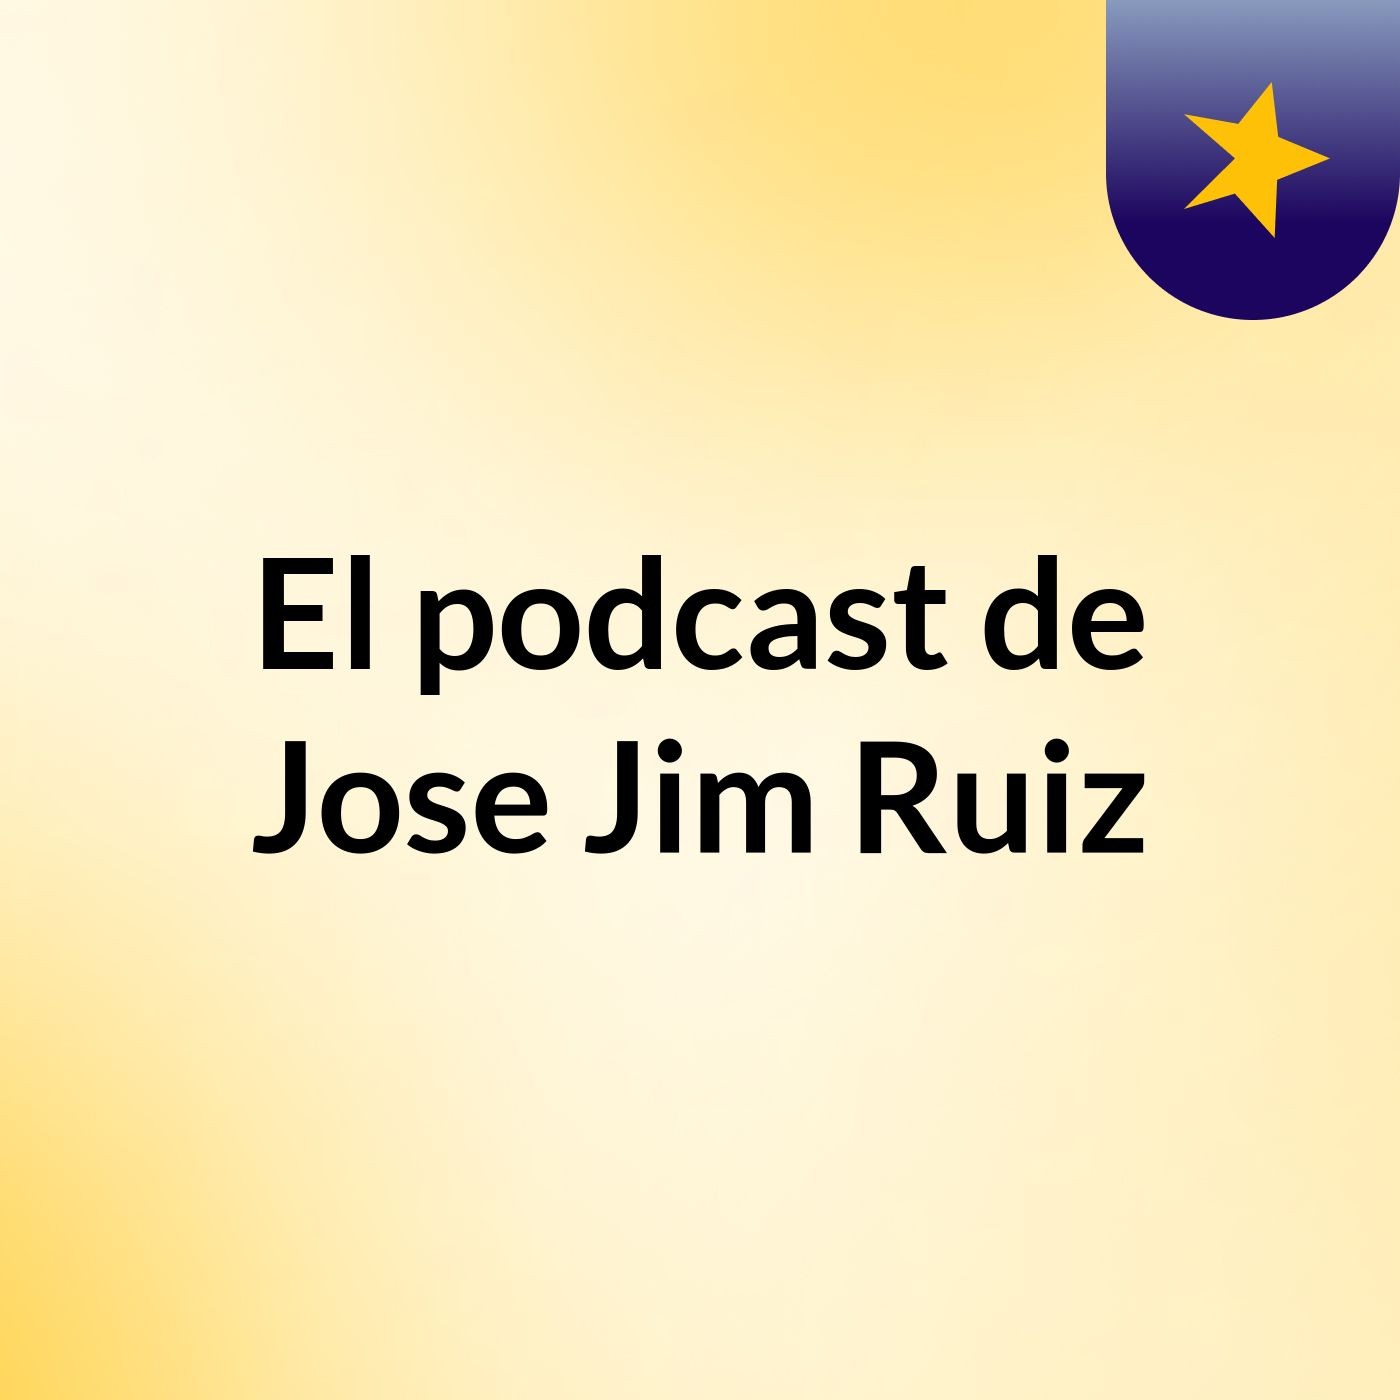 El podcast de Jose Jim Ruiz